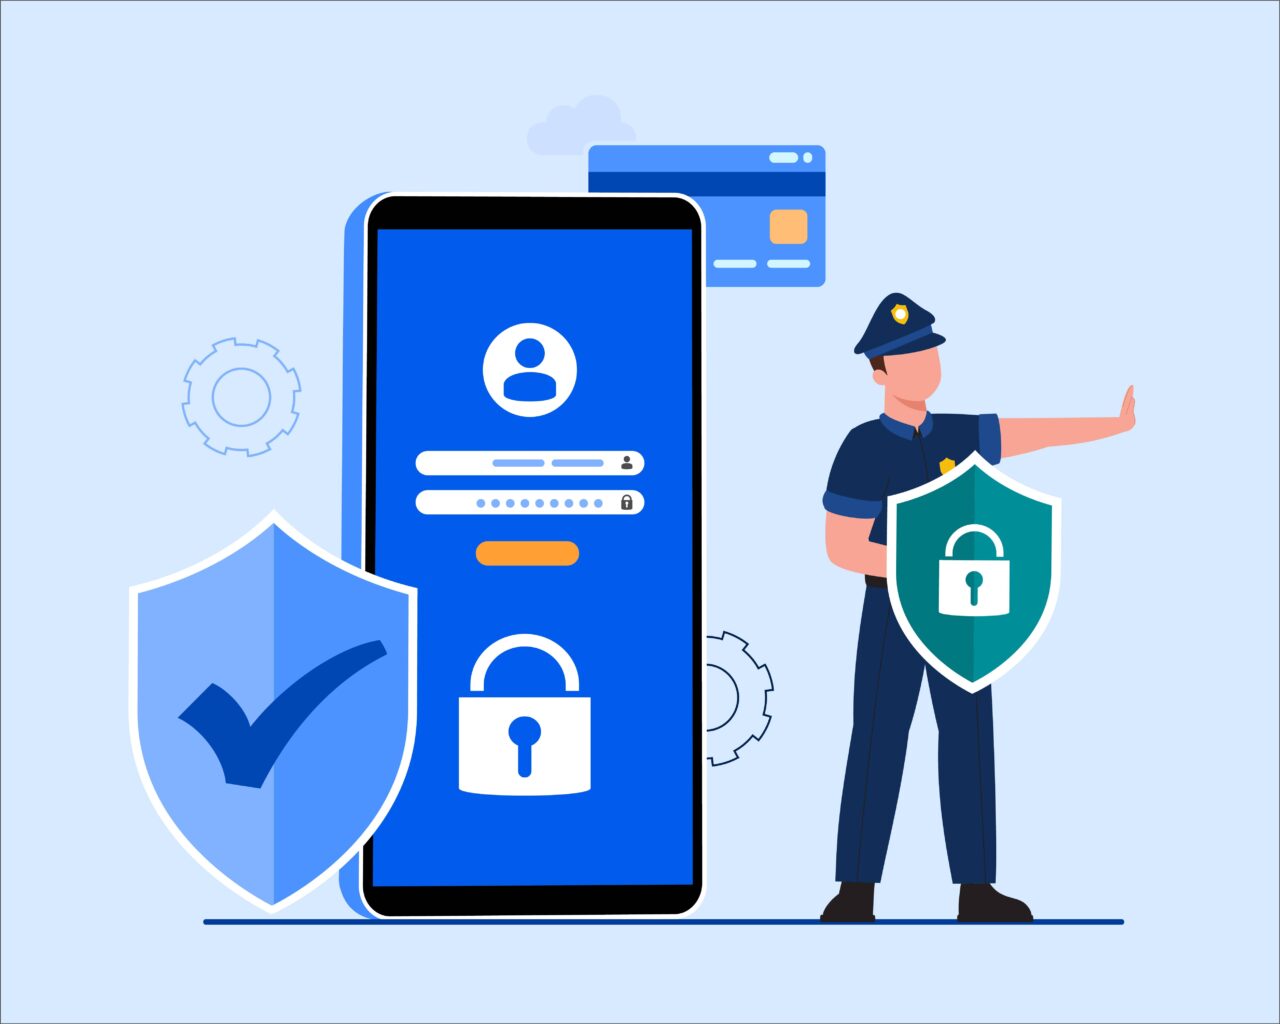  segurança na internet: policial protegendo celular e cartão de crédito